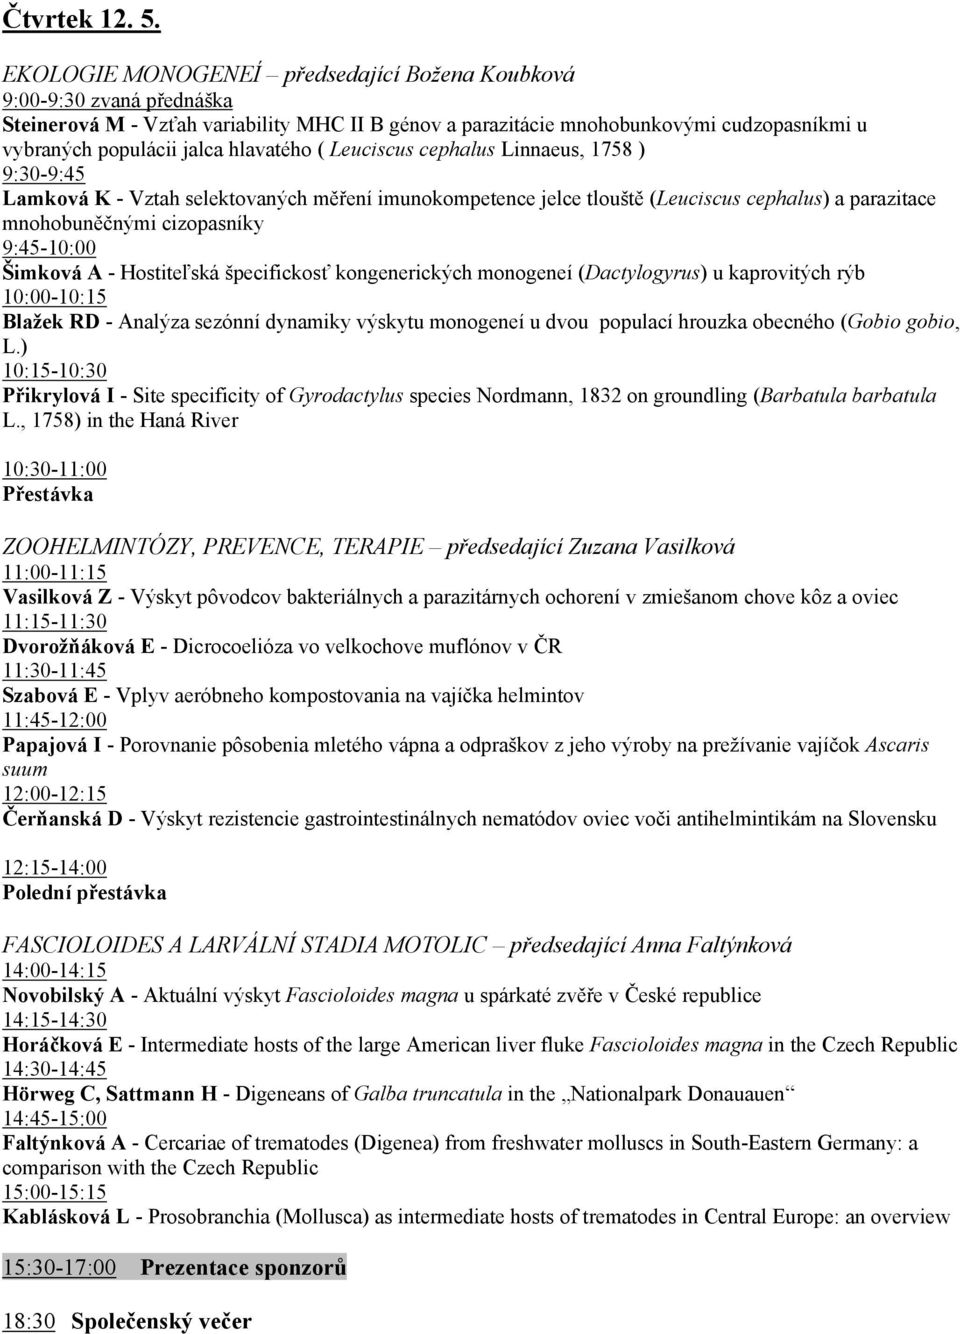 hlavatého ( Leuciscus cephalus Linnaeus, 1758 ) 9:30-9:45 Lamková K - Vztah selektovaných měření imunokompetence jelce tlouště (Leuciscus cephalus) a parazitace mnohobuněčnými cizopasníky 9:45-10:00